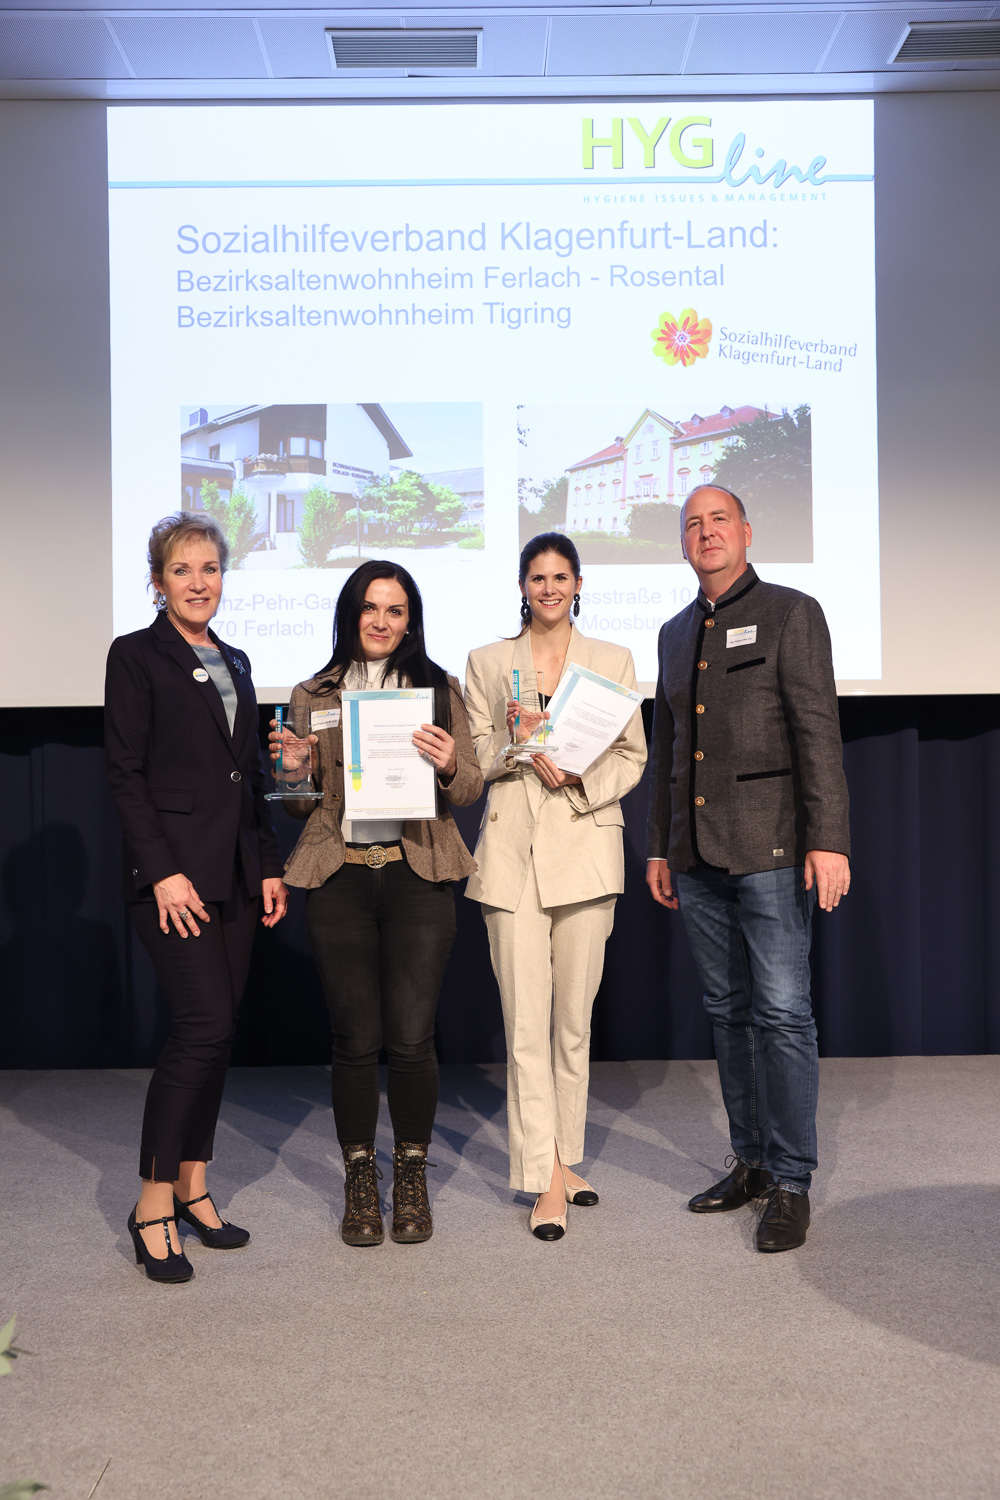 PreisträgerInnen des Sozialhilfeverbandes Klagenfurt-Land